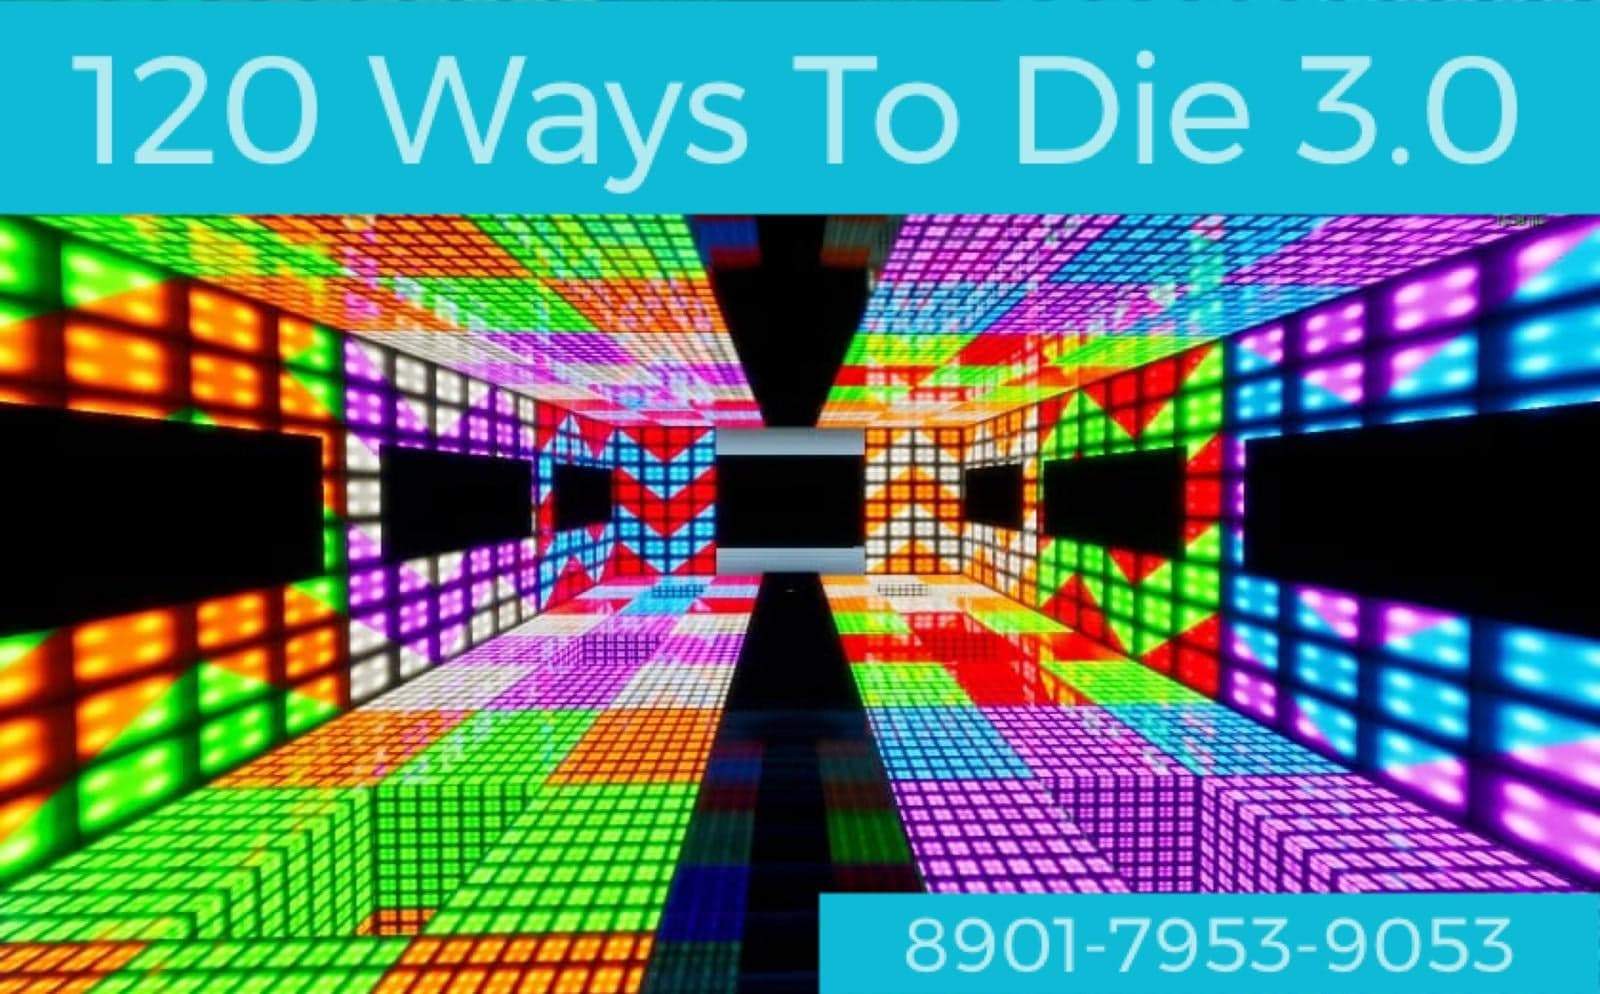 120 WAYS TO DIE 3.0 DEATHRUN!